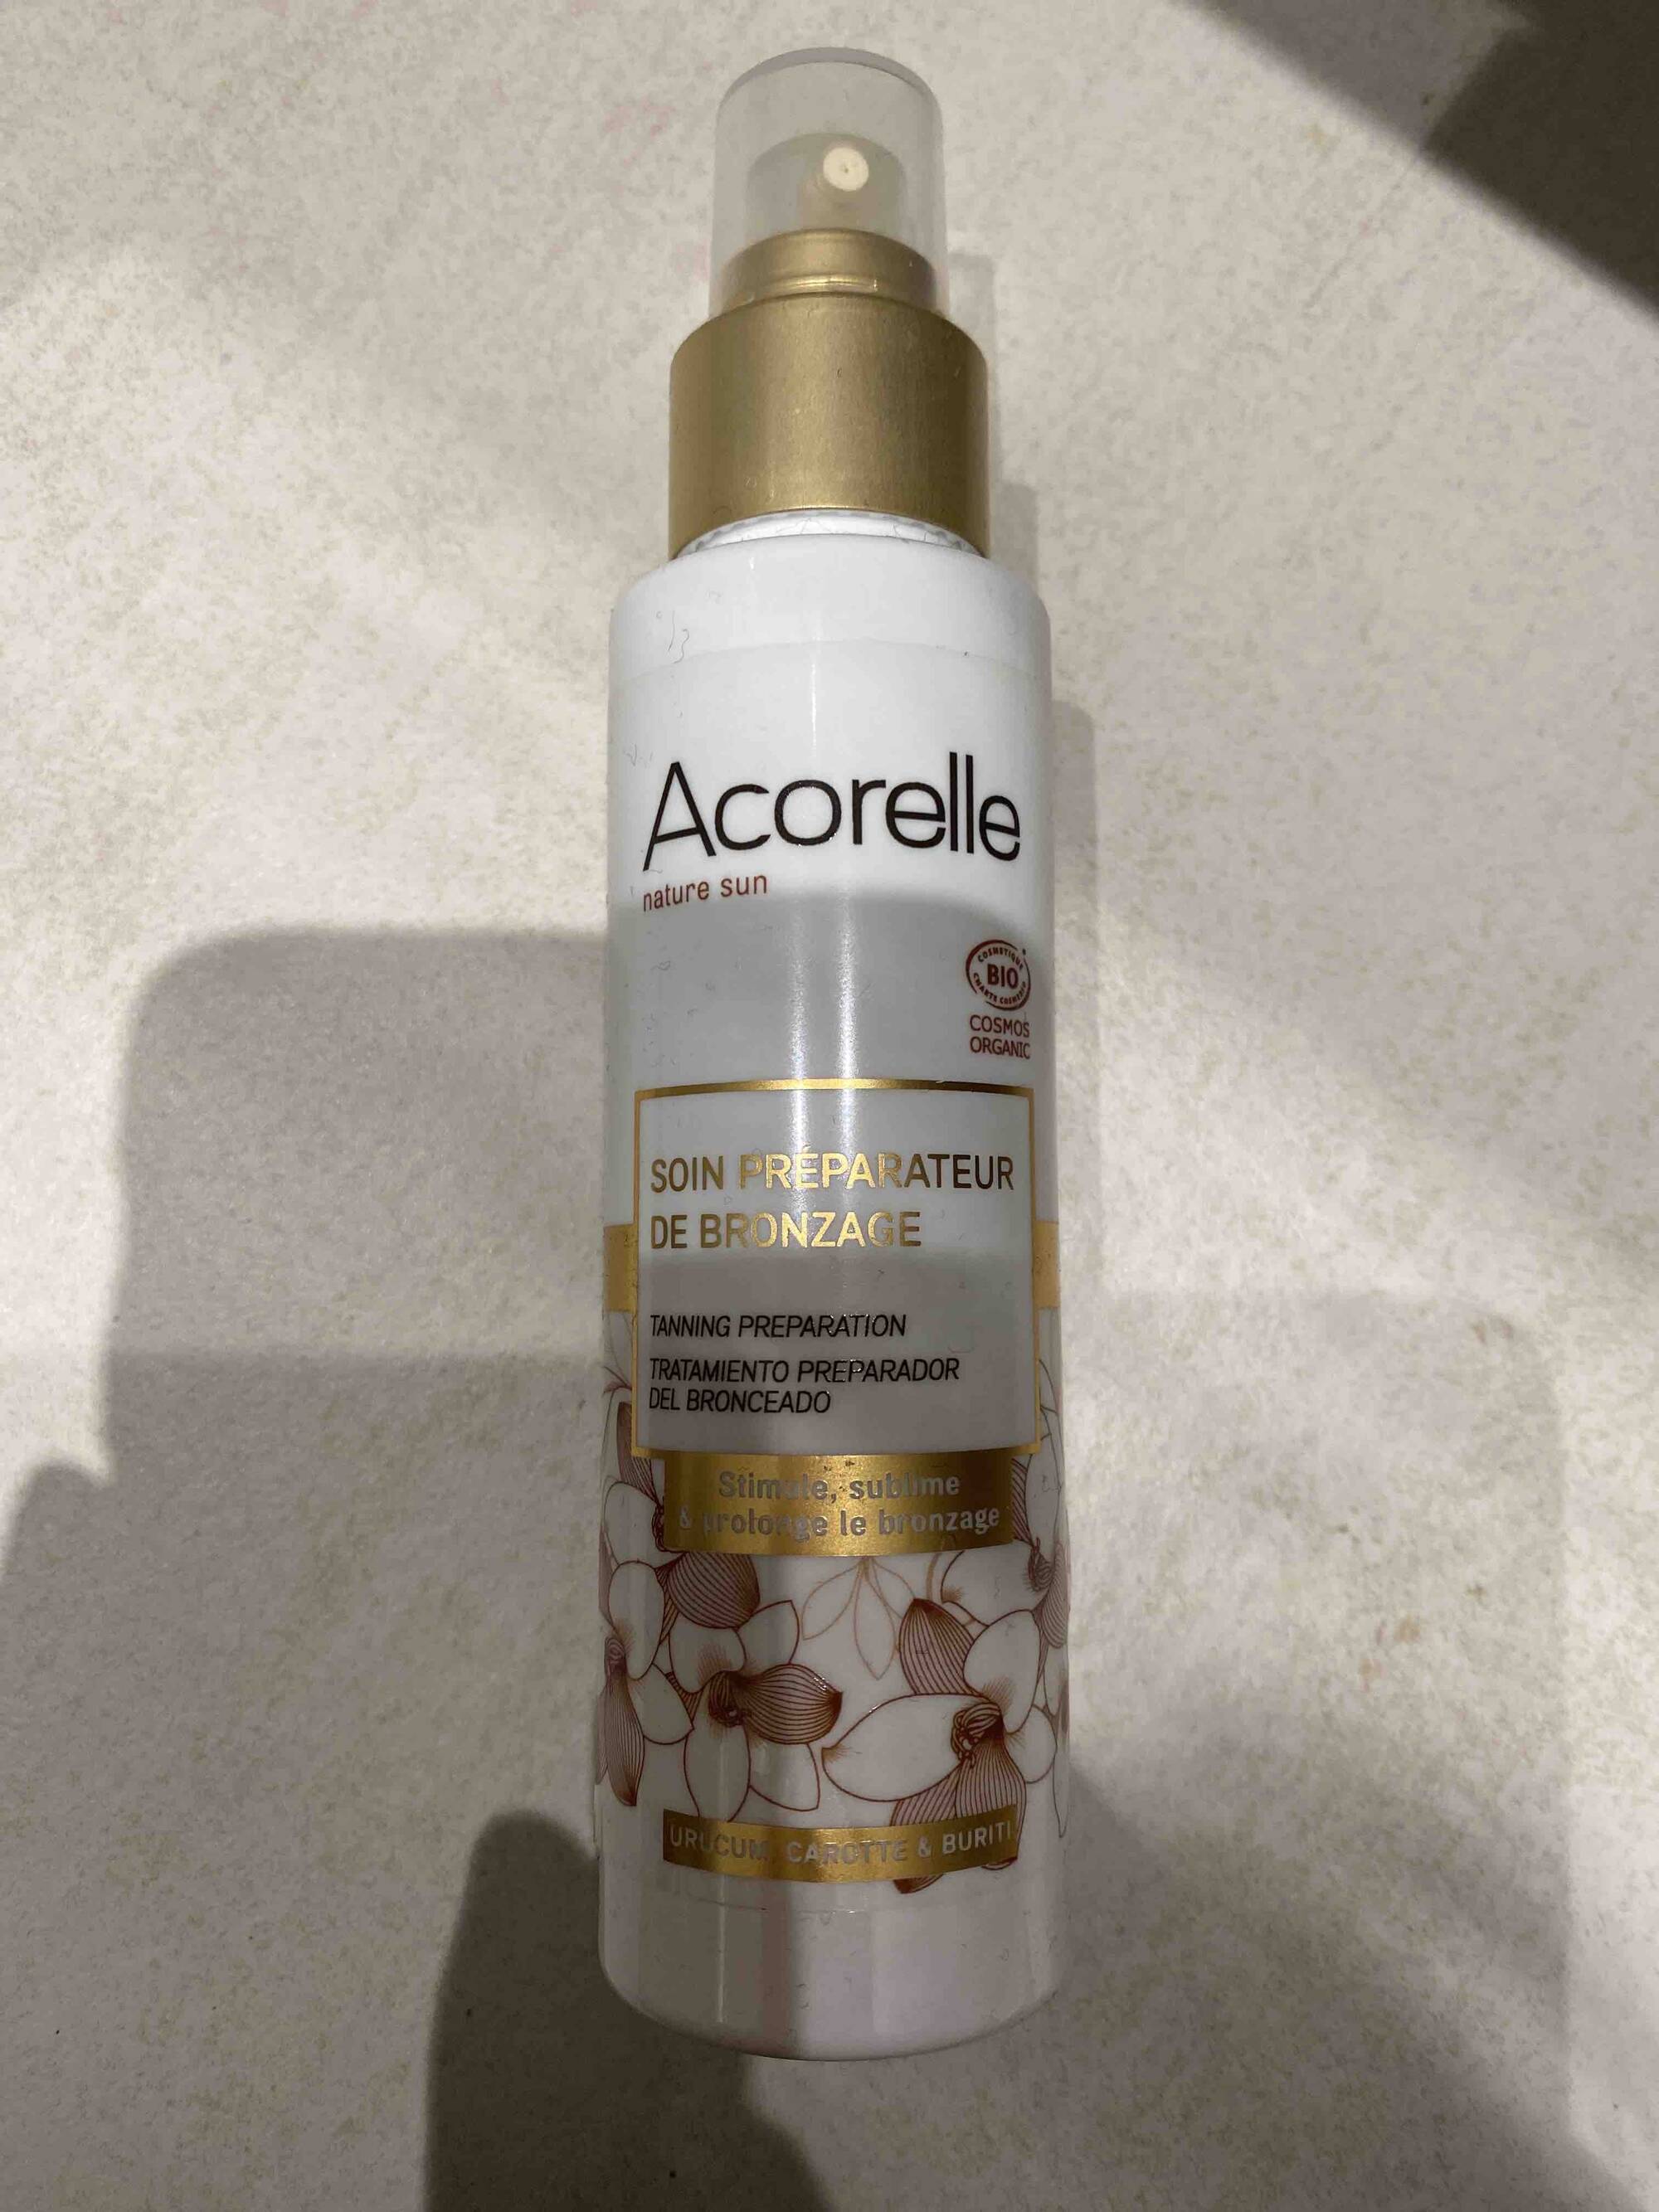 ACORELLE - Nature sun - Soin préparateur de bronzage